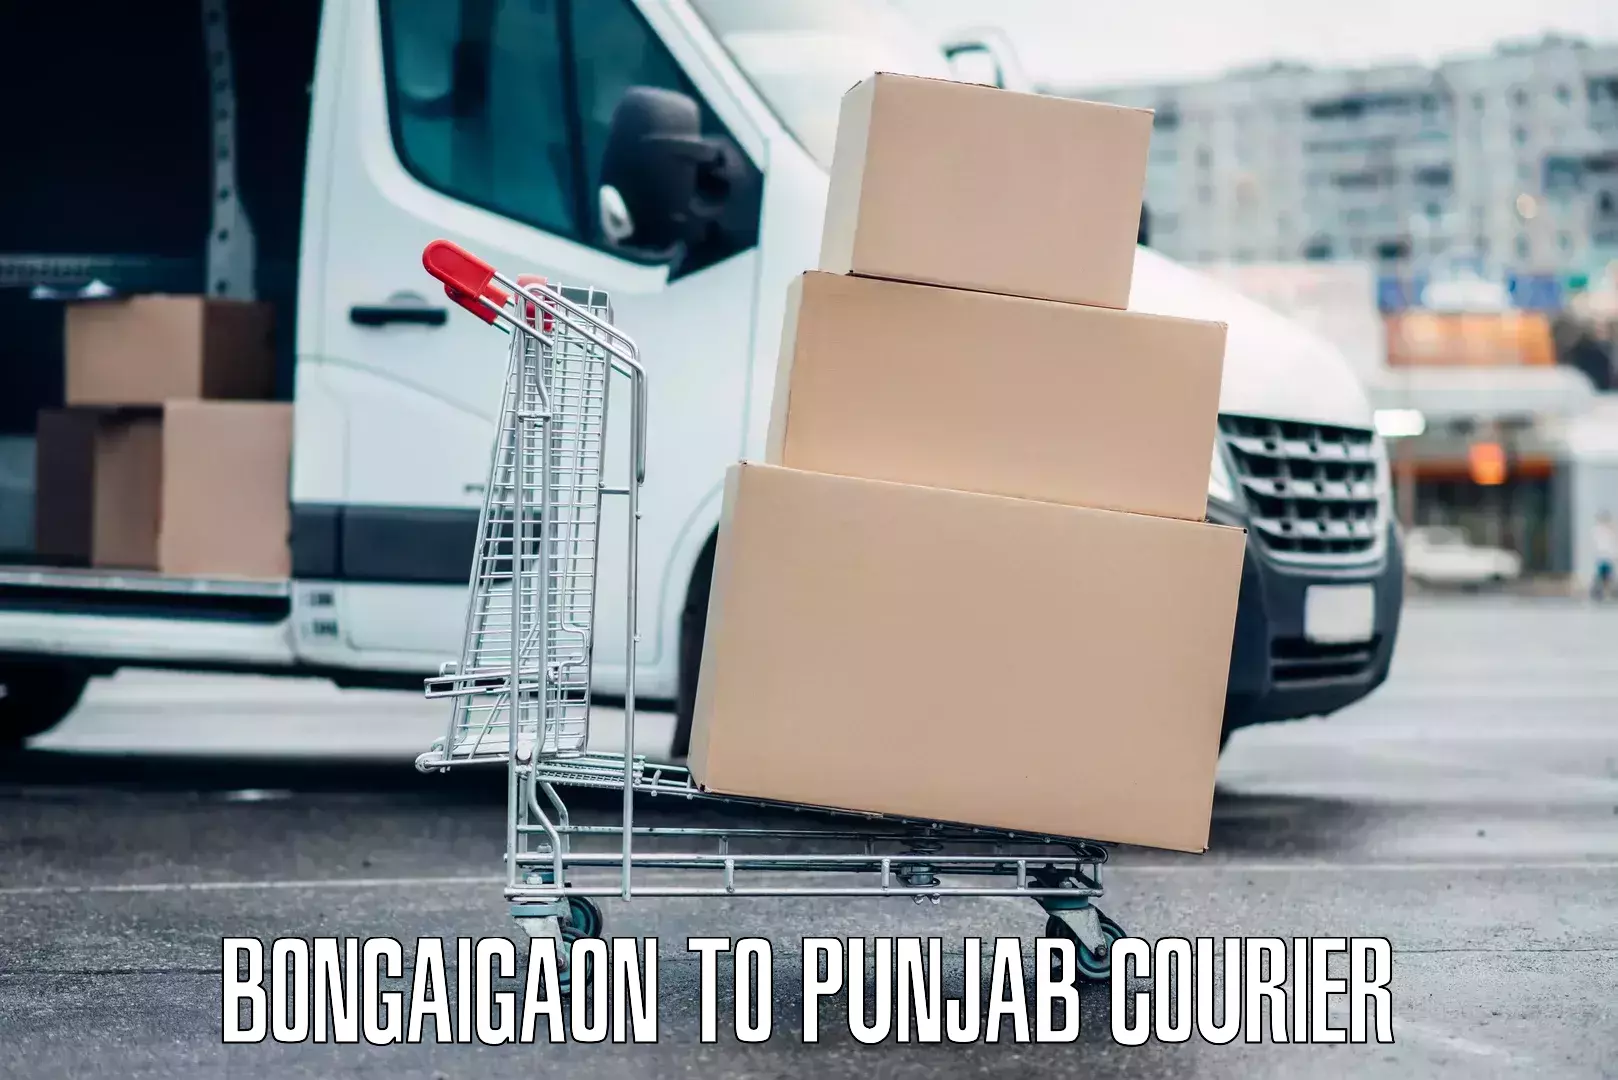 Luggage shipment processing Bongaigaon to Punjab